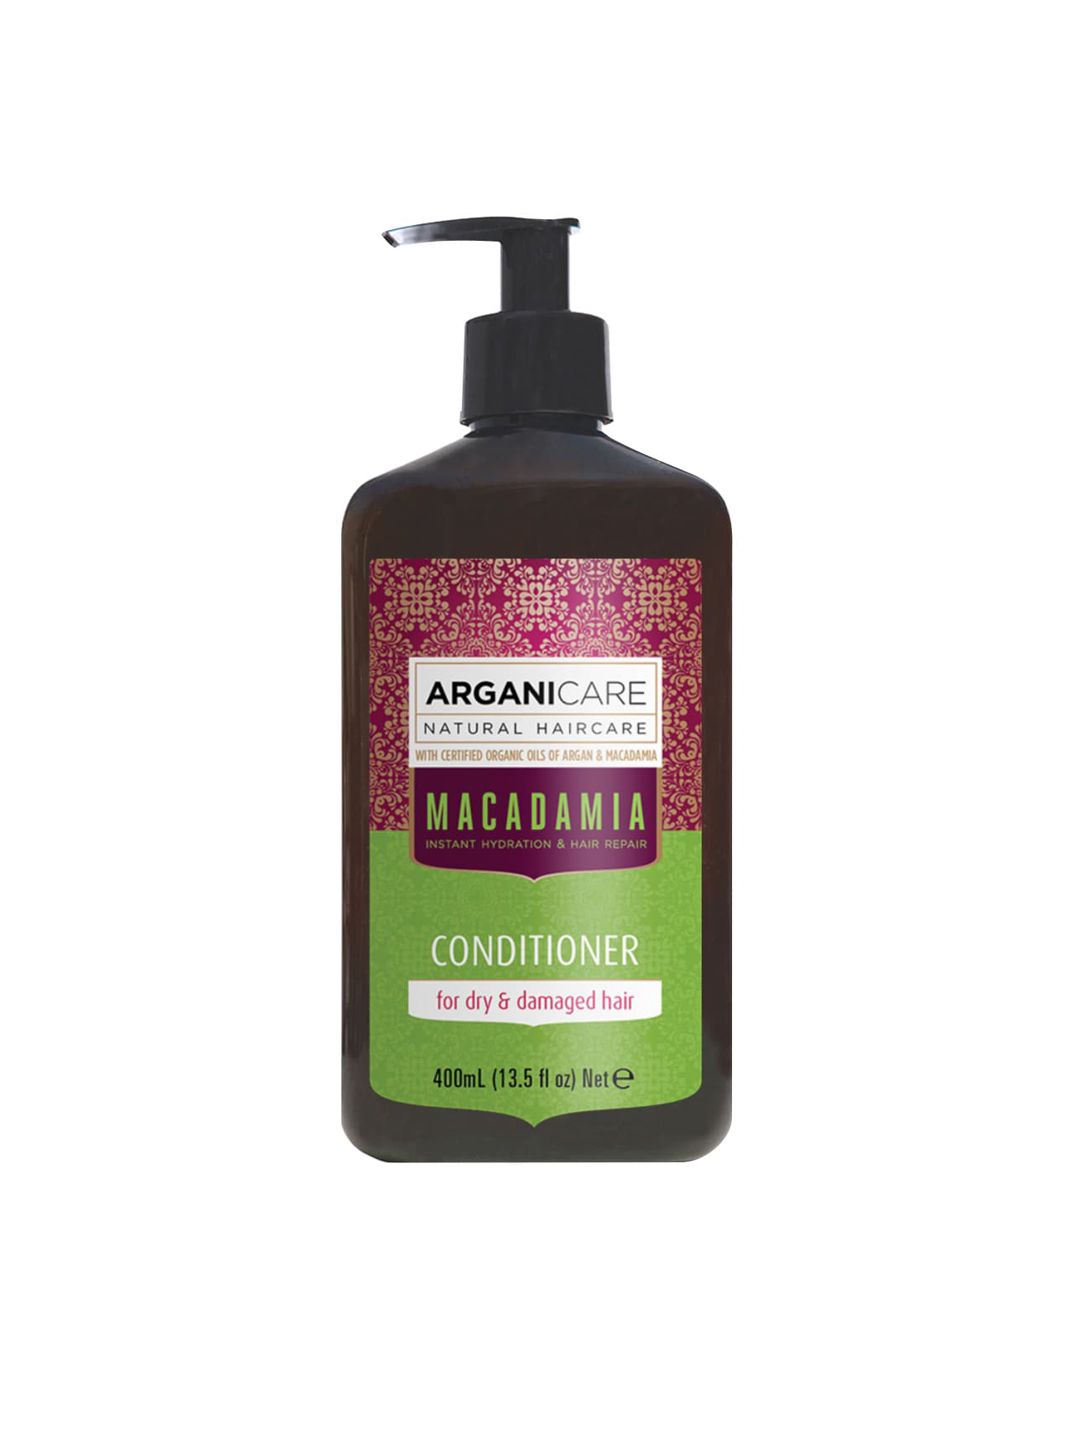 ARGANICARE Organic Argan Oil and Macadamia Conditioner - 400ml Price in India